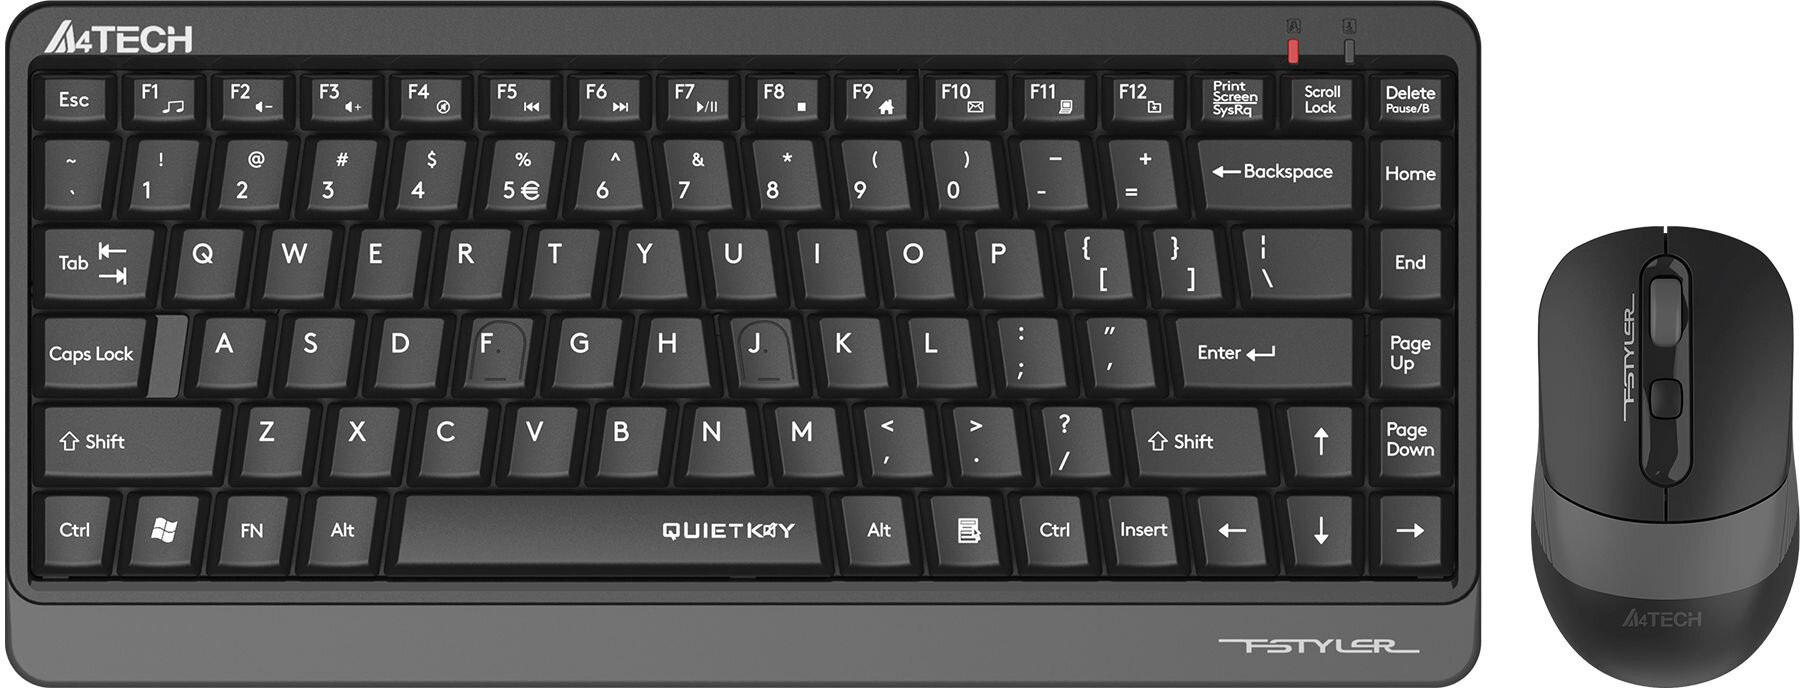 Клавиатура + мышь A4Tech Fstyler FGS1110Q клав: черный/серый мышь: черный/серый USB беспроводная Multimedia